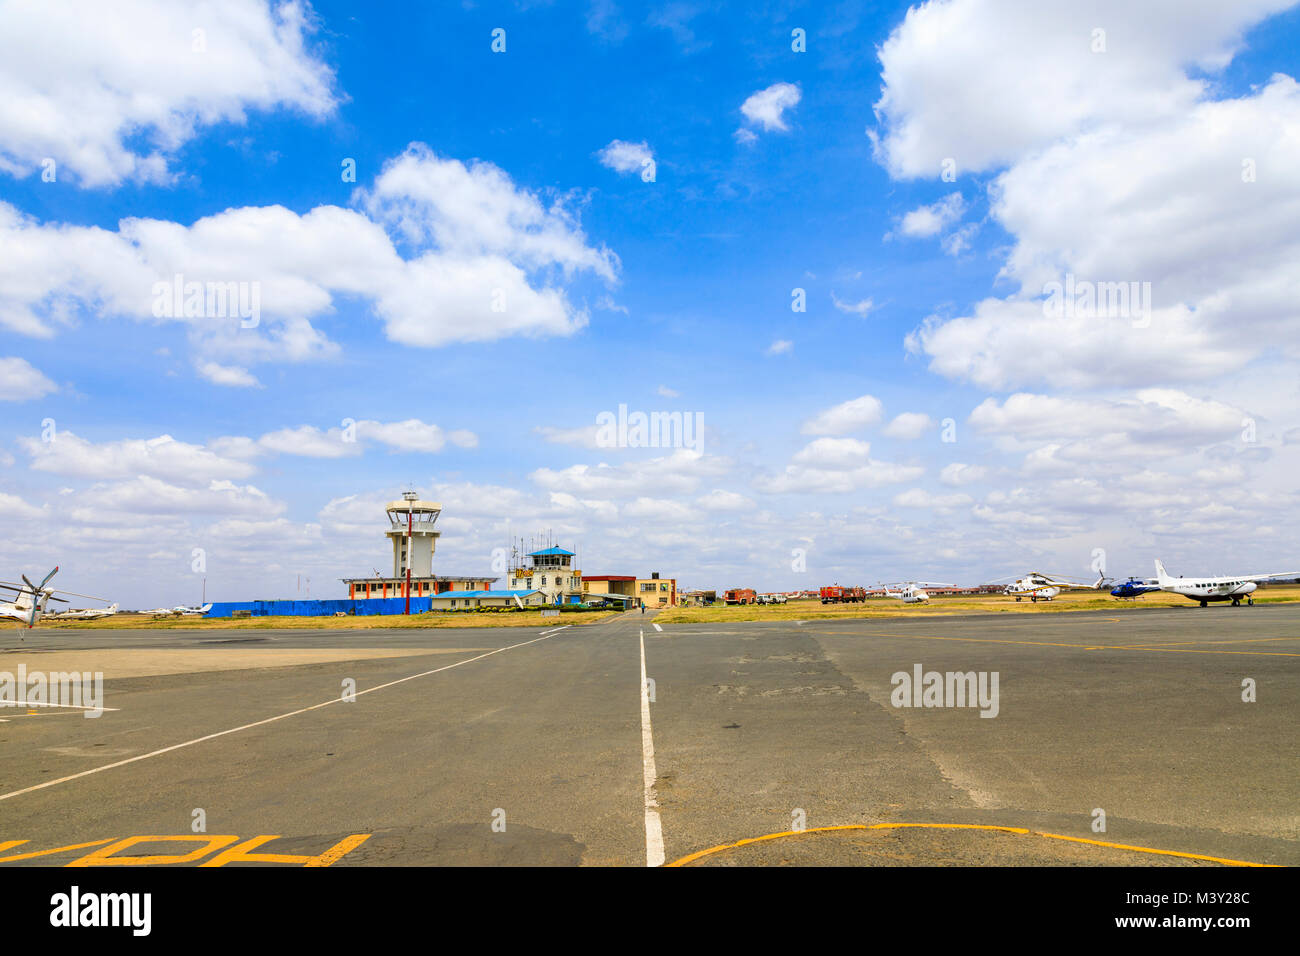 Anzeigen von Wilson Airport, dem lokalen Flughafen in Nairobi, für Inlandsflüge in die Masai Mara, Kenia mit Kontrollturm und Landebahn verwendet Stockfoto